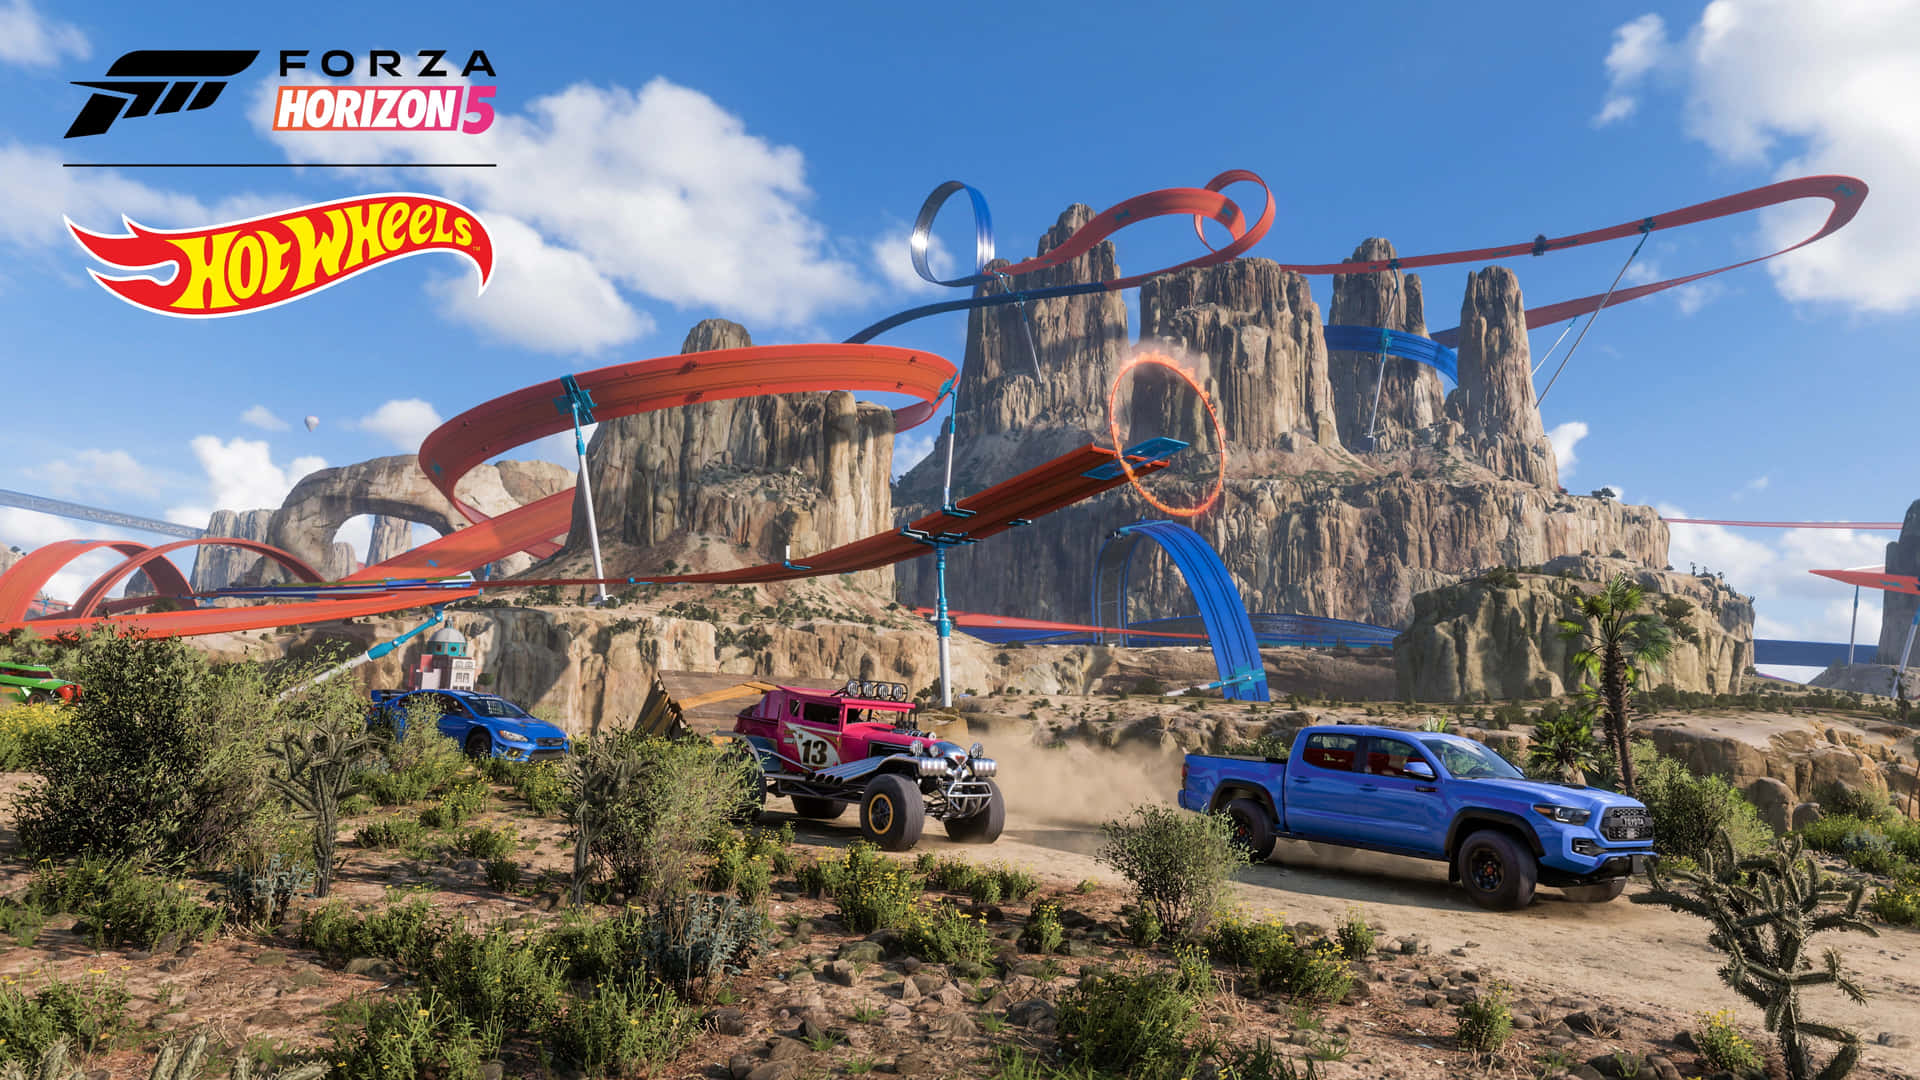 Nyd de uendelige veje af Forza Horizon 5 i Ultra HD-opløsning. Wallpaper